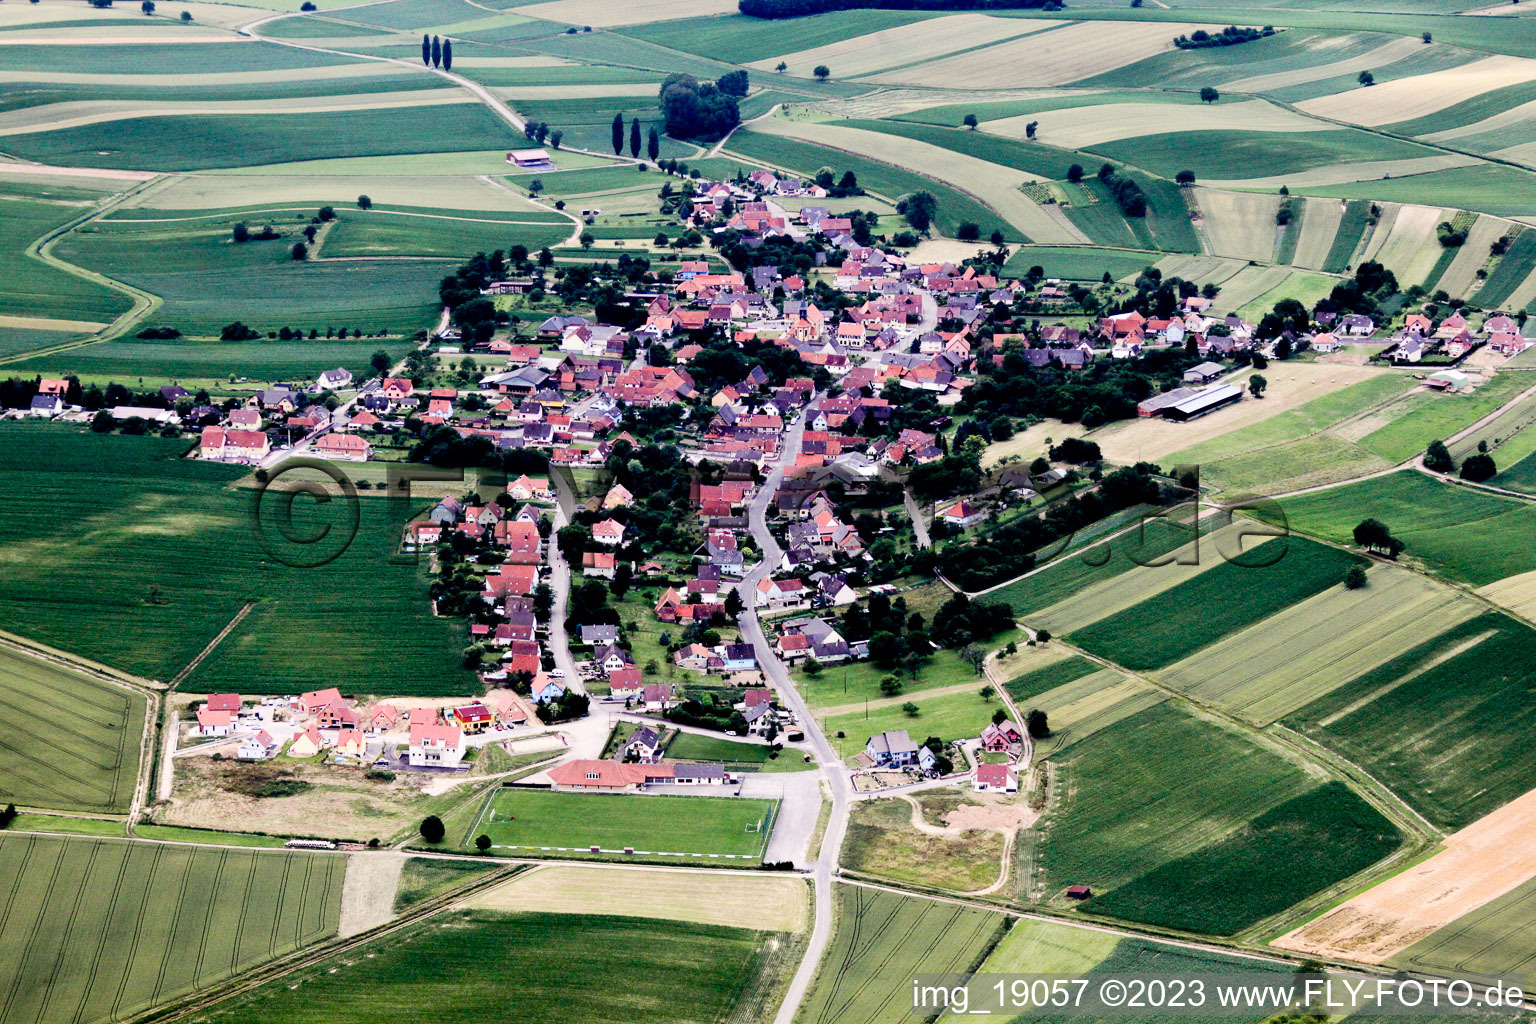 Wintzenbach dans le département Bas Rhin, France vue d'en haut